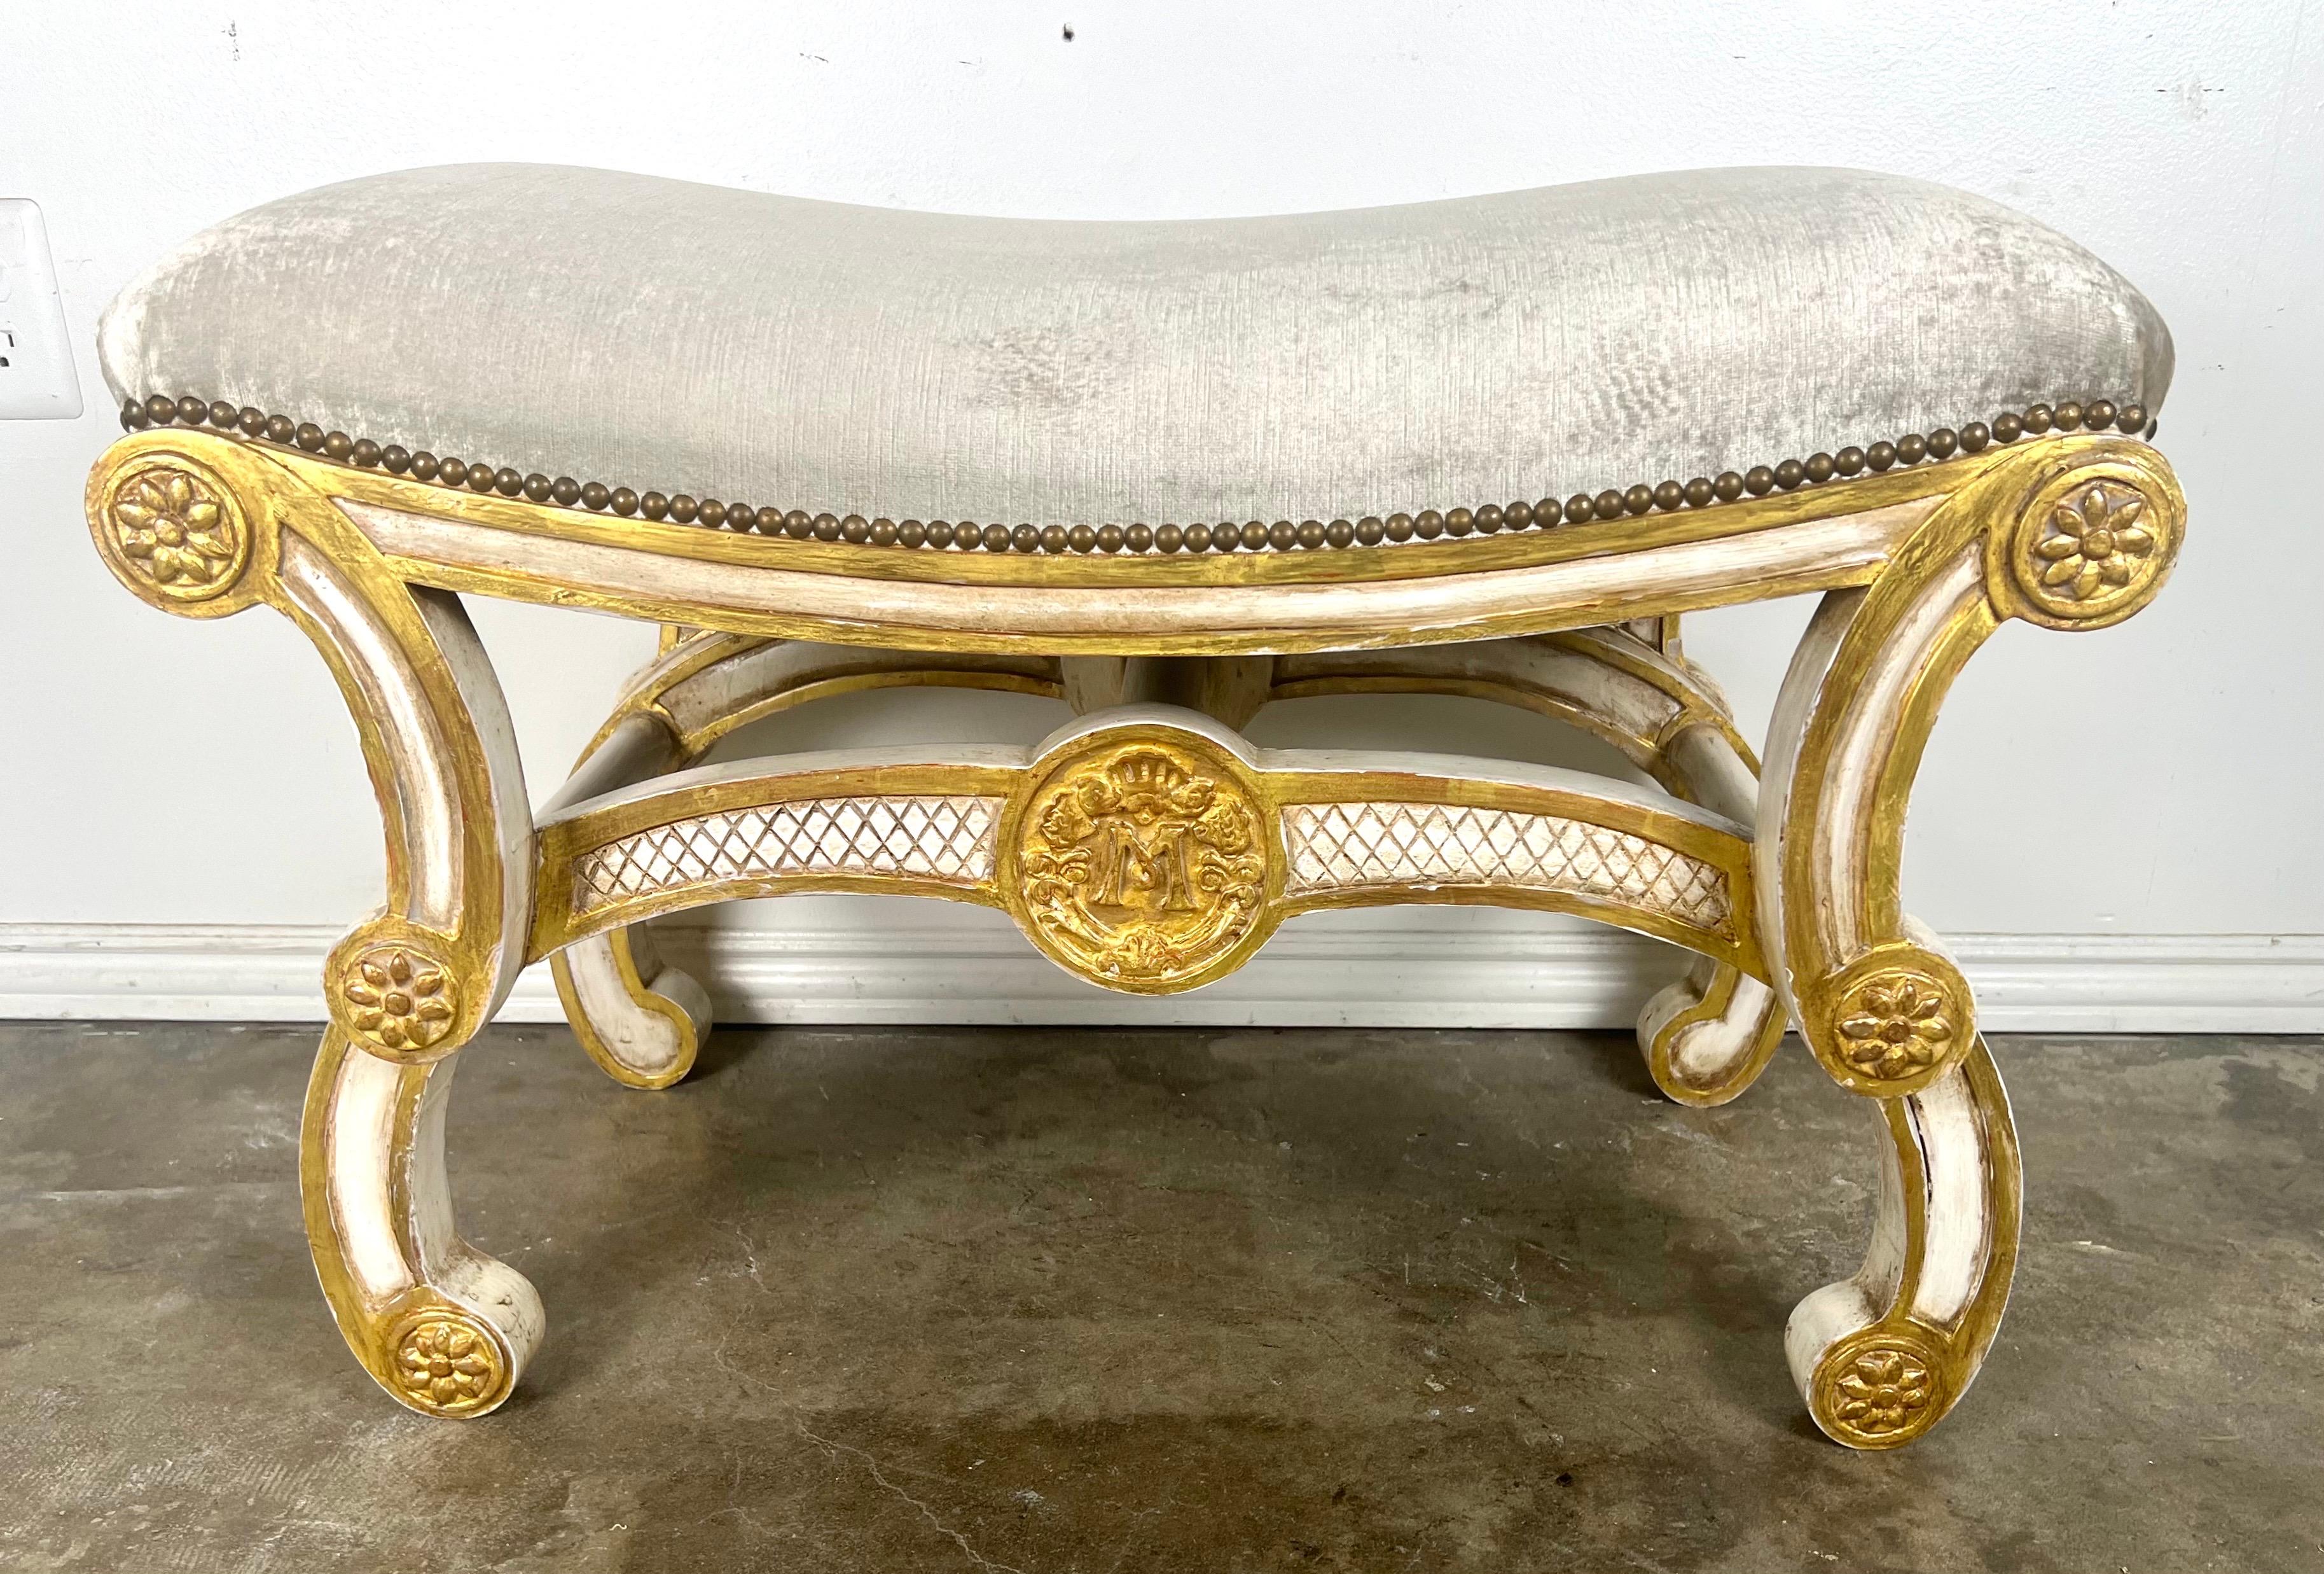 Ce banc de style rococo italien capture magnifiquement l'essence opulente et décorative de la période rococo.  Il présente des ornements peints et dorés parcellaires qui rehaussent son élégance et son attrait visuel.  Les pieds à volutes sont une